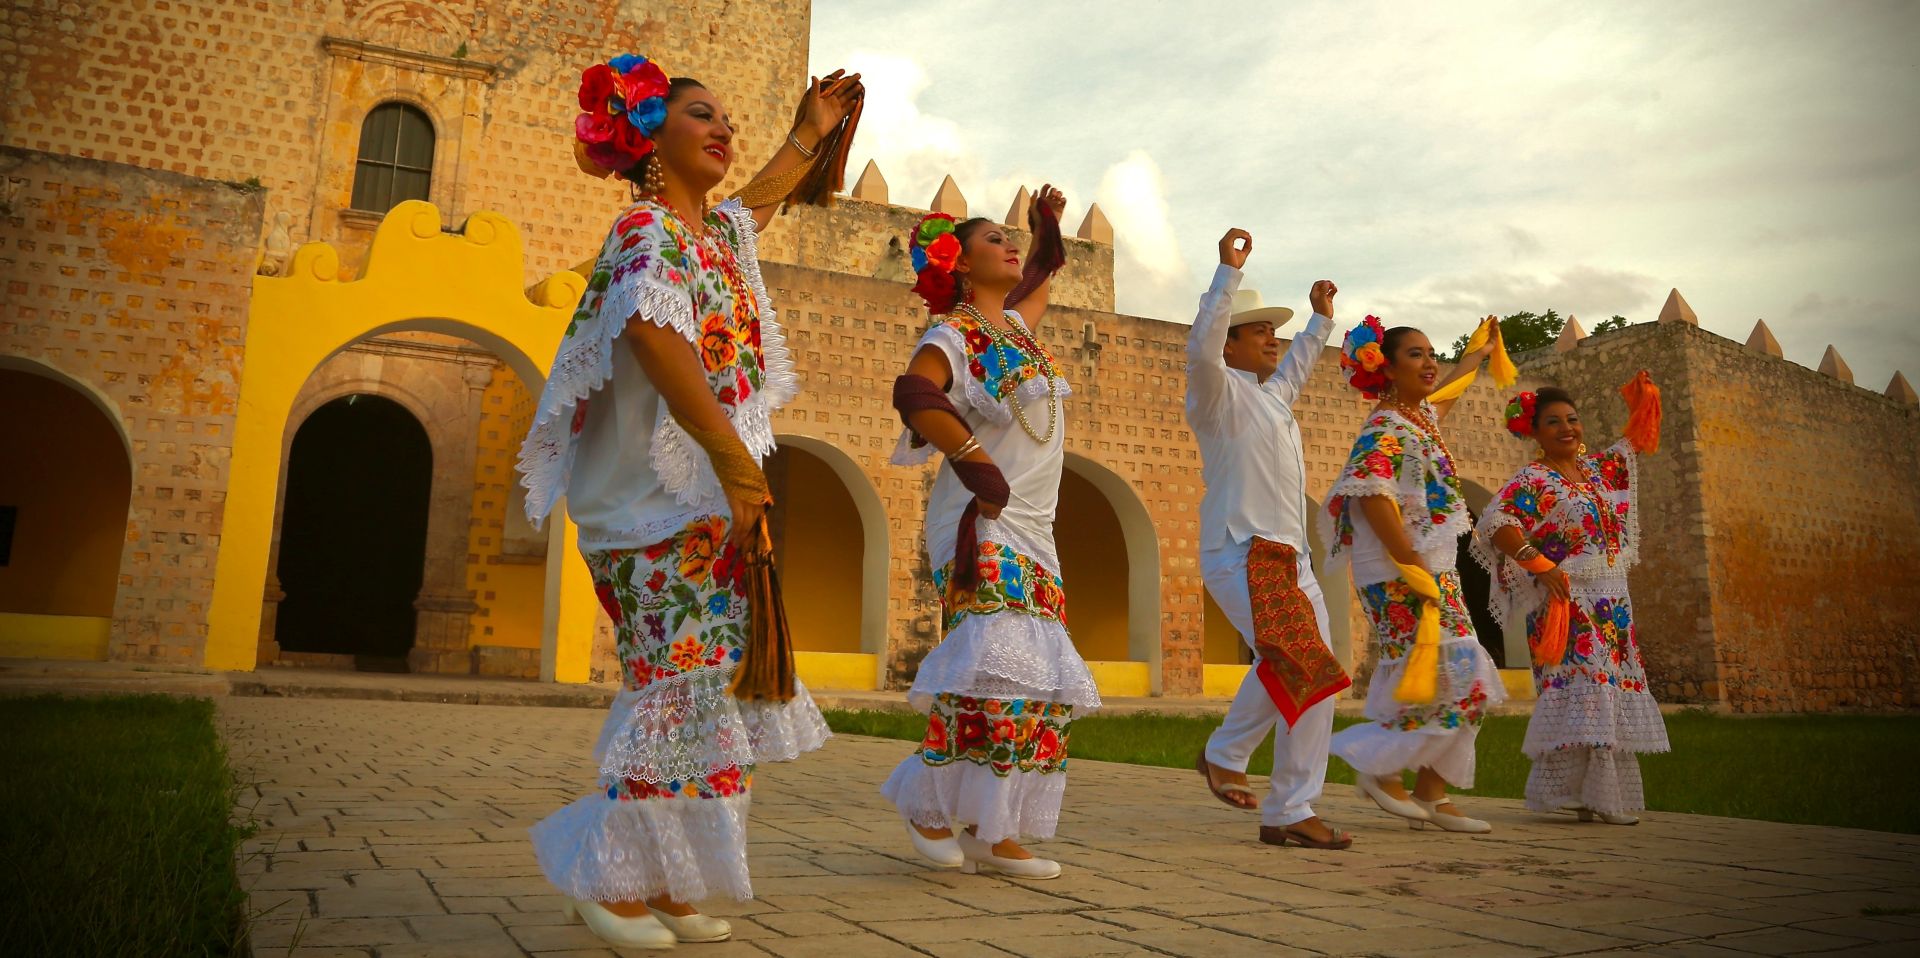 El turismo genera números positivos en la economía mexicana